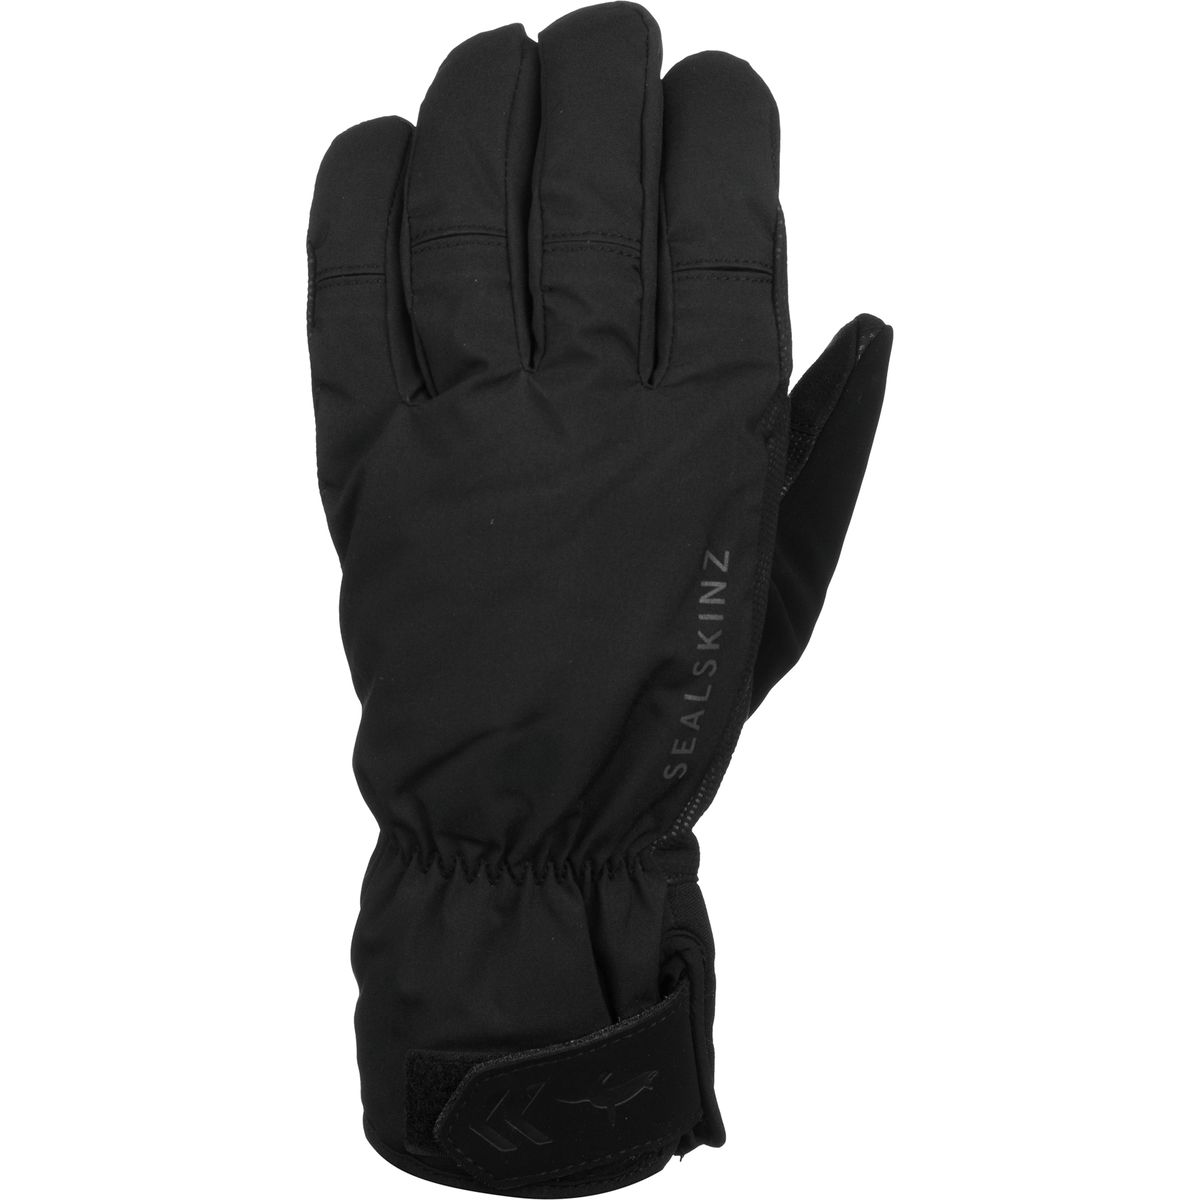 SealSkinz Highland Glove - Men's